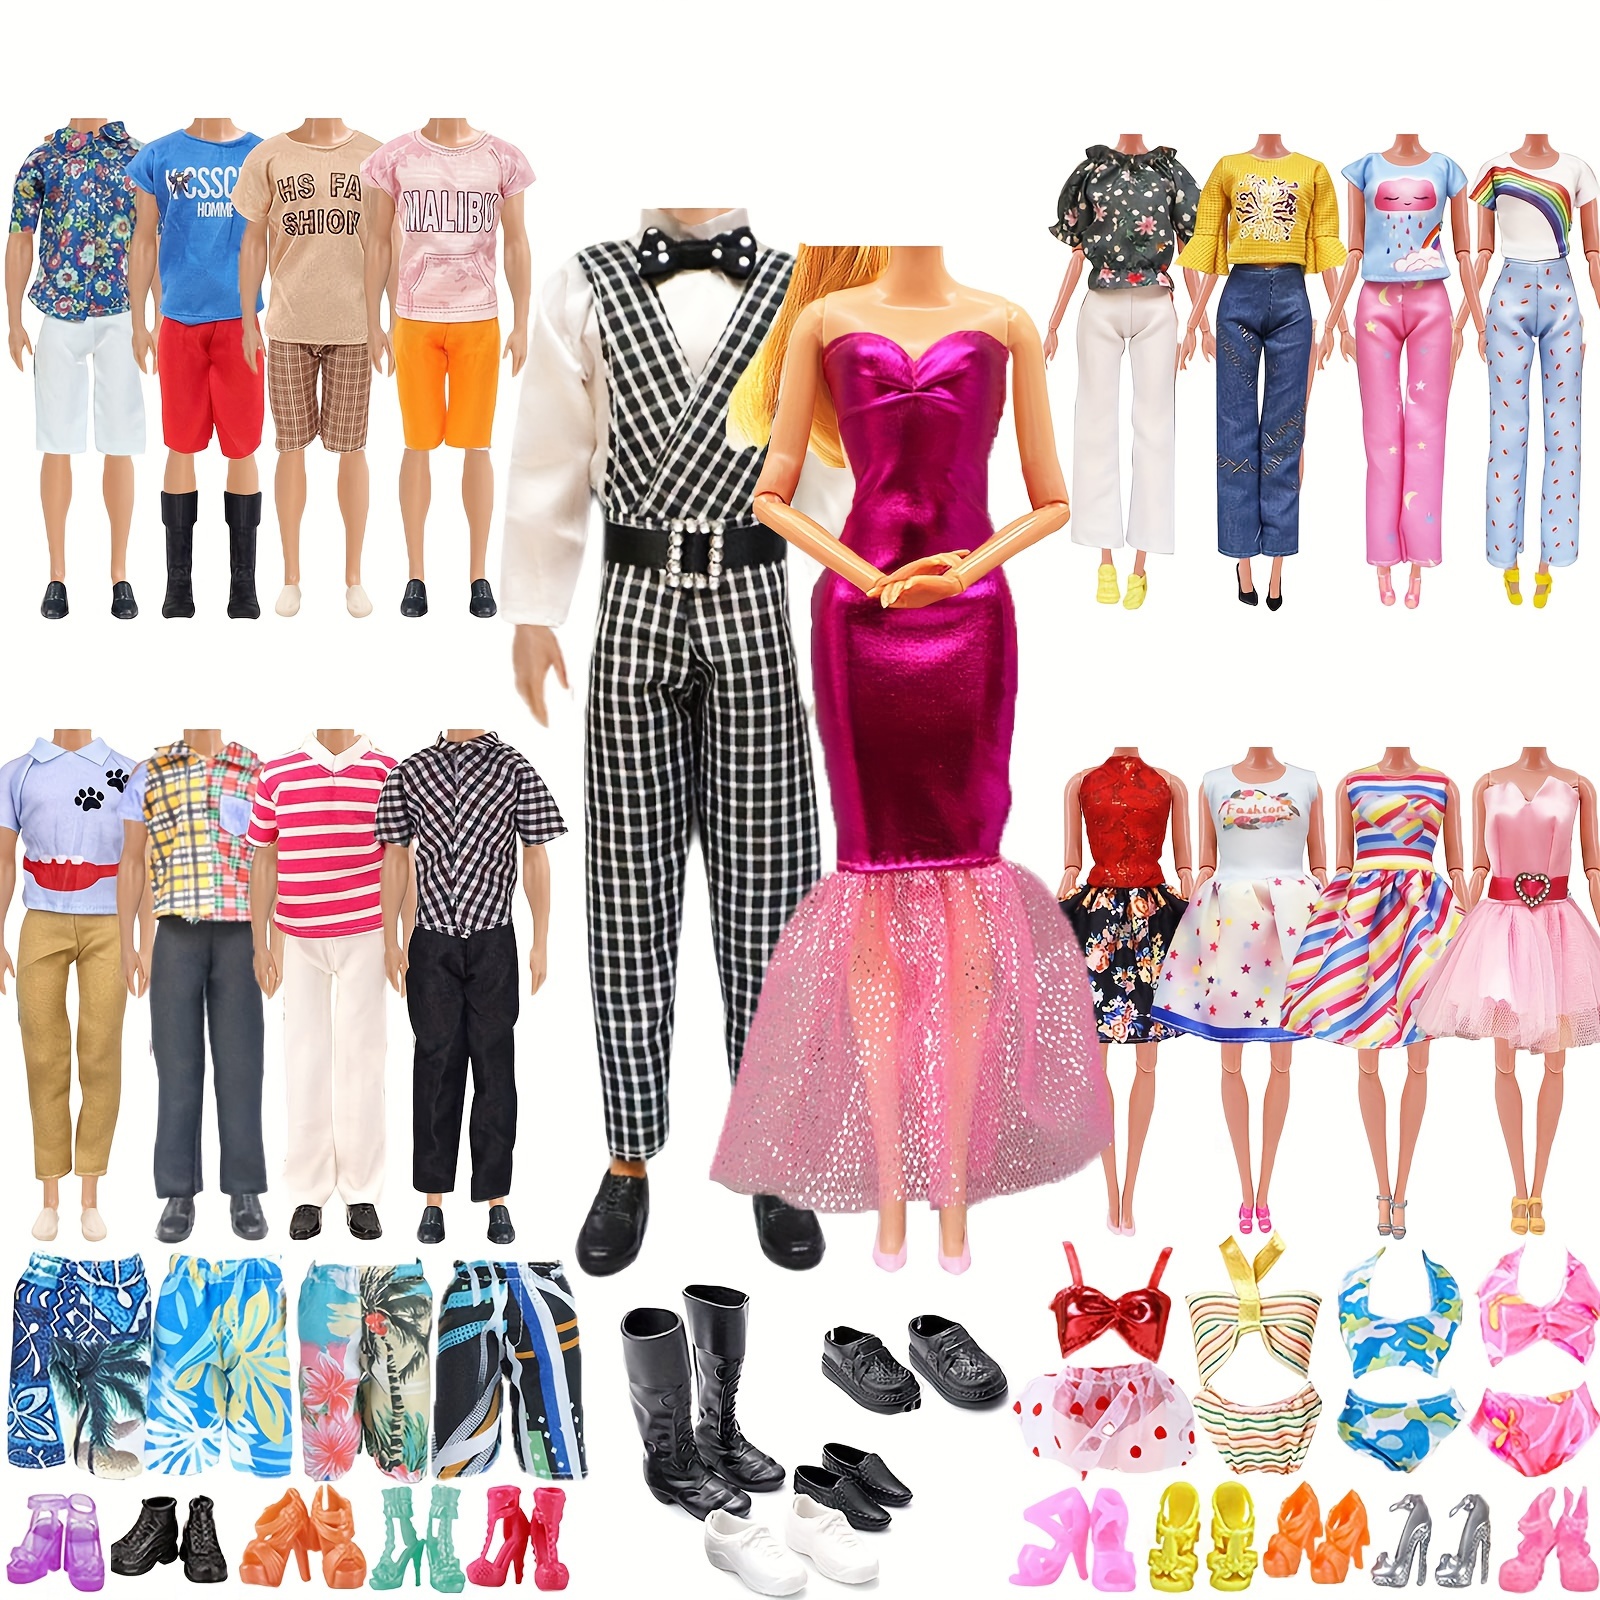 Buy Barbie Fashionistas Ken Doll Assortment - 12inch/30cm, Dolls